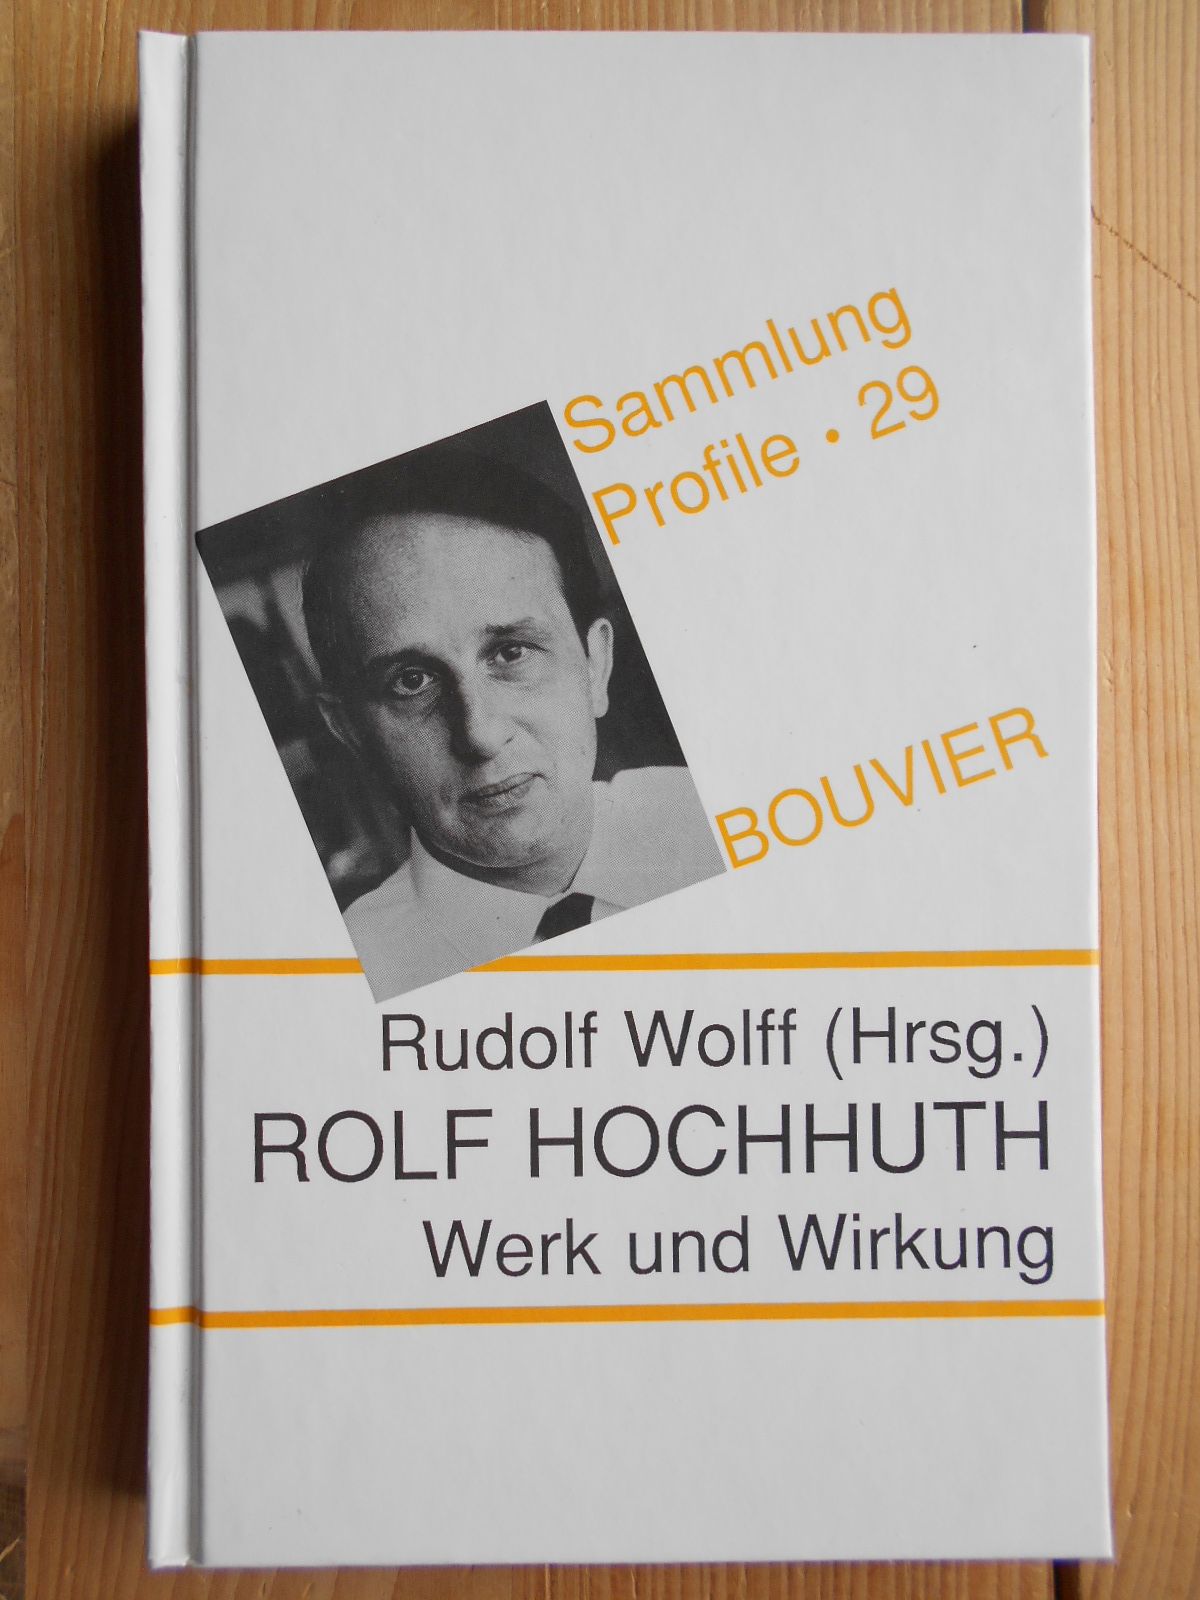 Rolf Hochhuth : Werk und Wirkung. hrsg. von Rudolf Wolff / Sammlung Profile ; Bd. 29 - Wolff, Rudolf (Hrsg.)